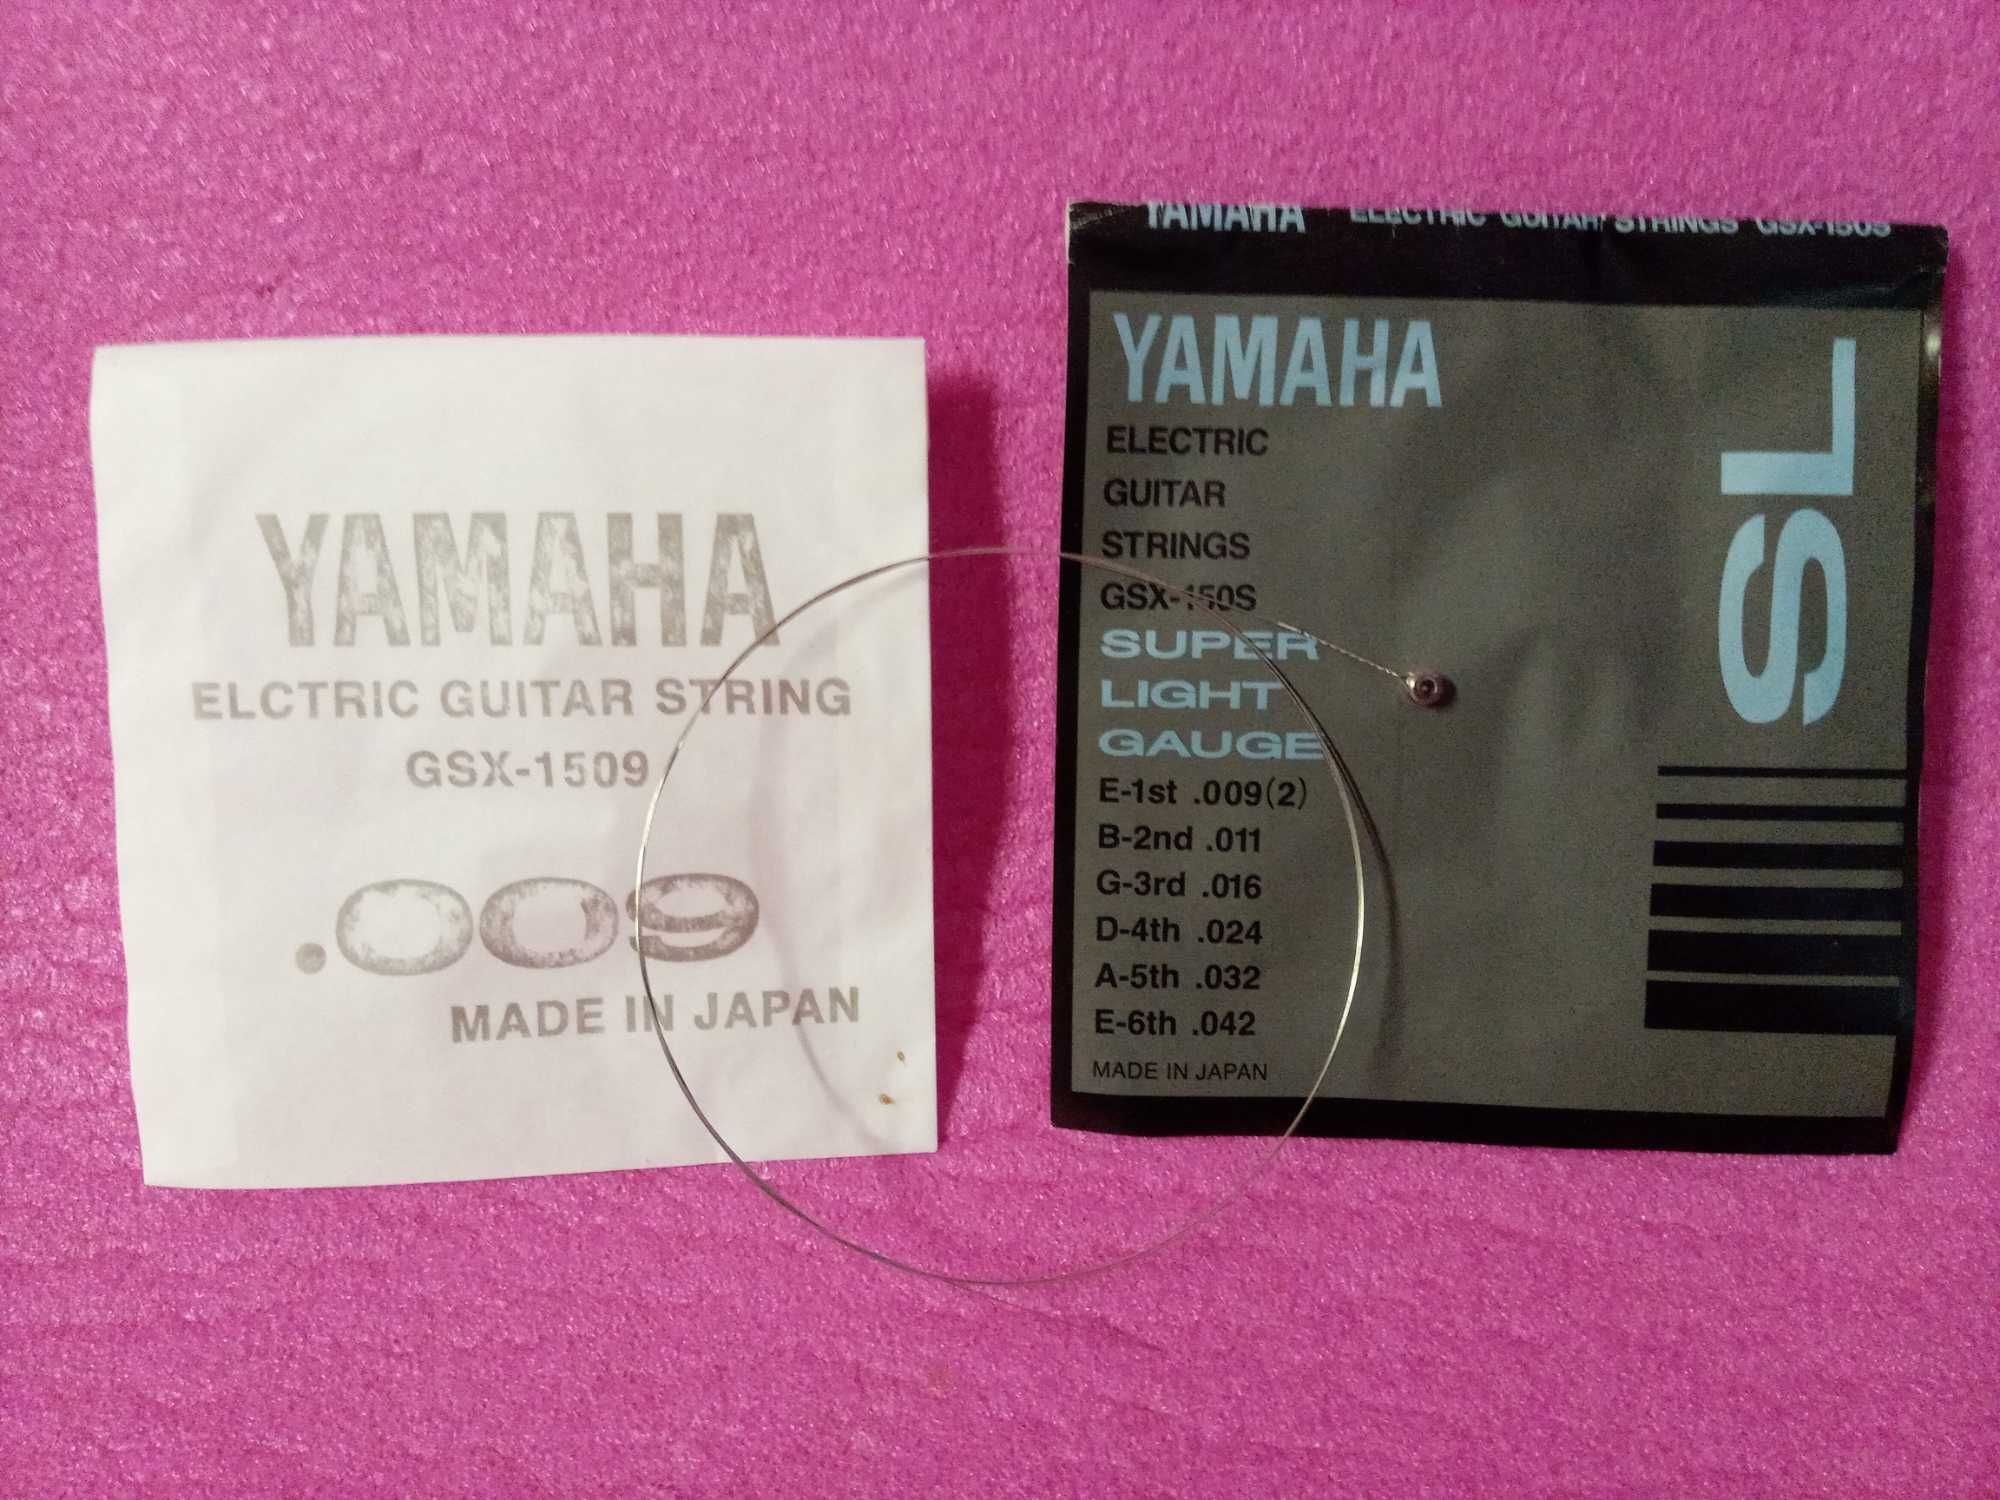 струна E-1st .009 Yamaha для электрогитары